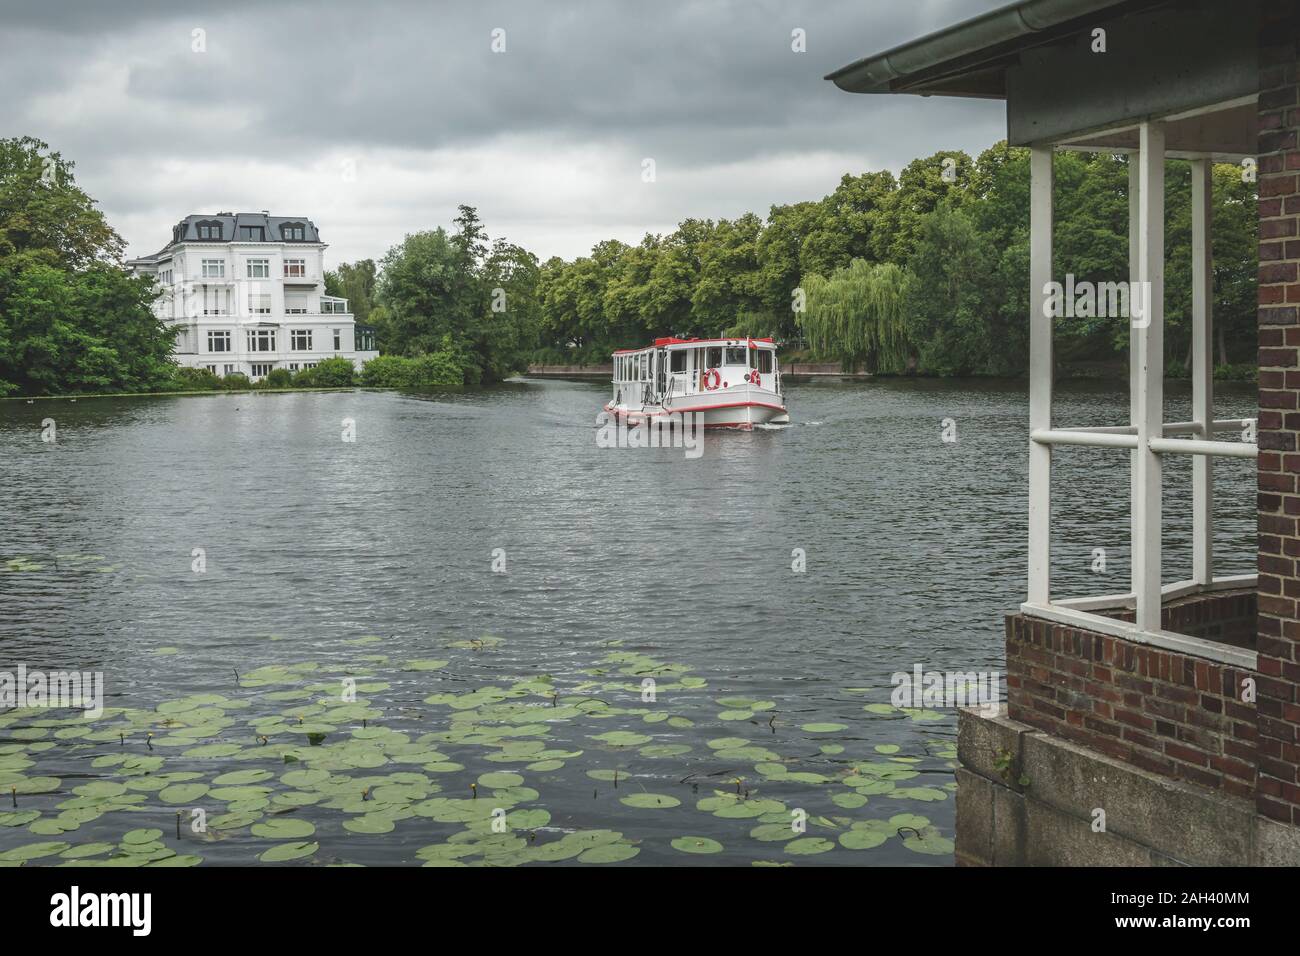 Alemania, Hamburgo, barco de pasajeros en el lago Alster en día nublado Foto de stock